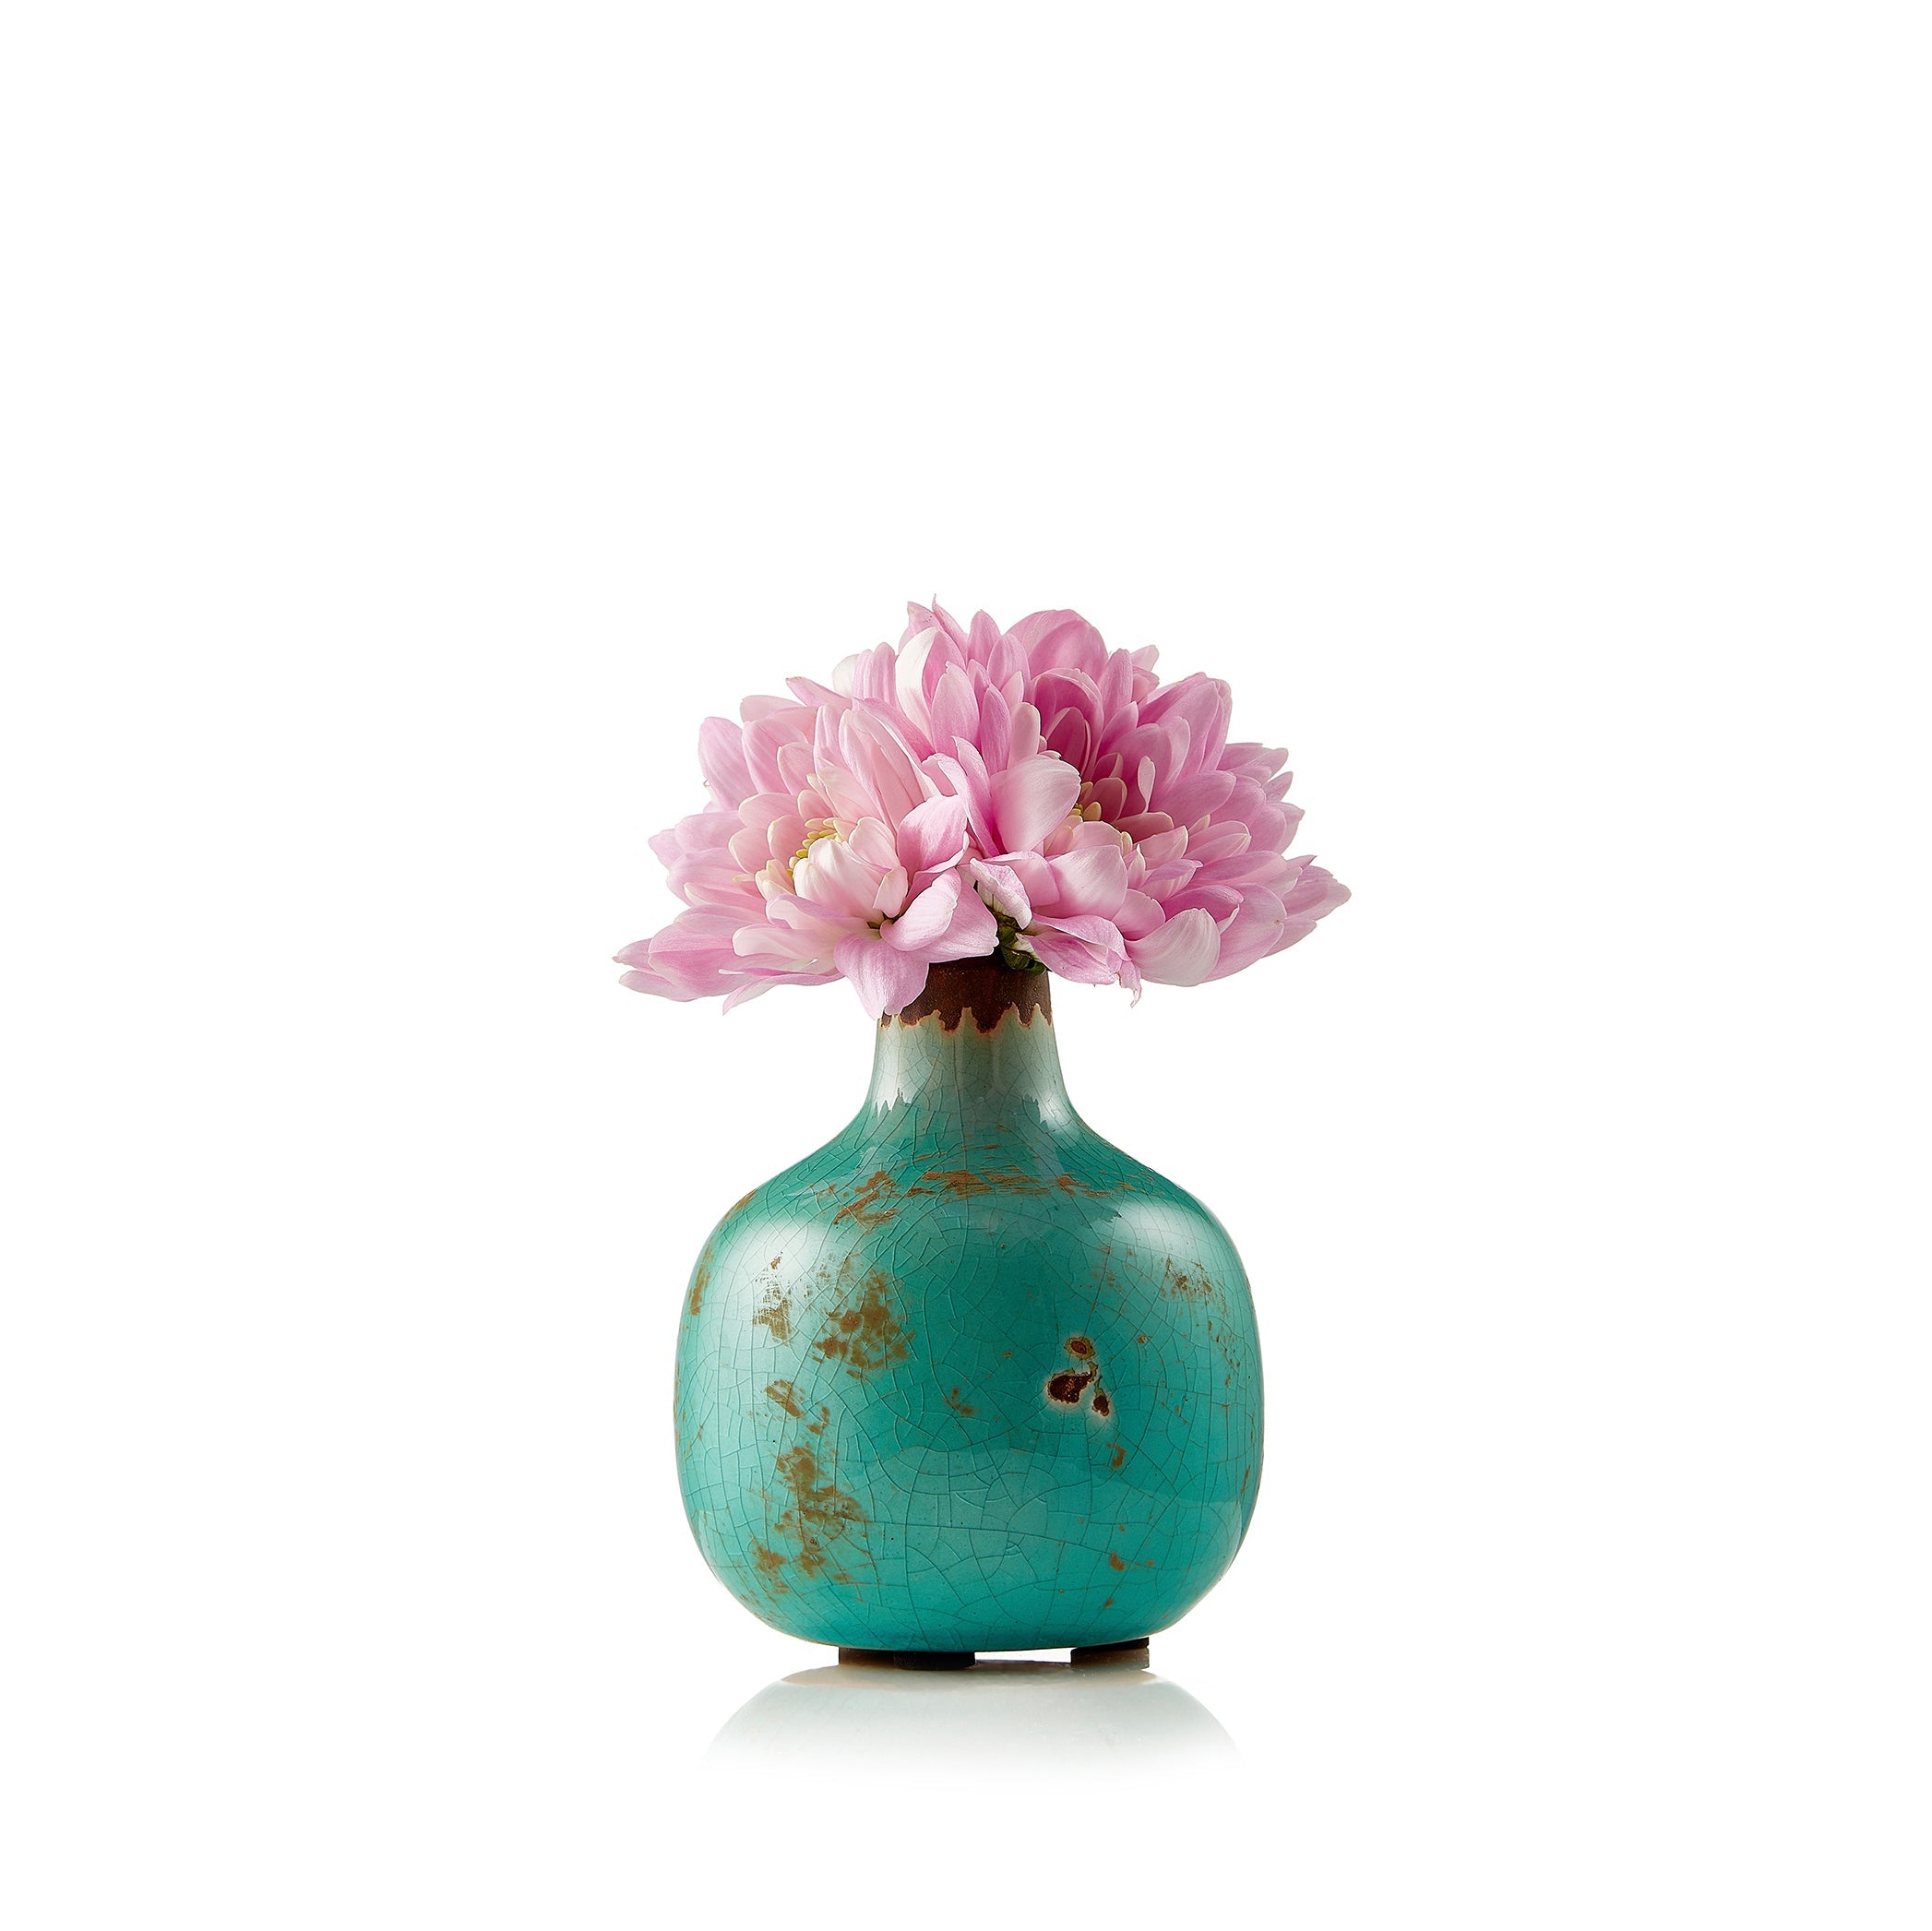 Ceramic Crackled Vase in Turquoise